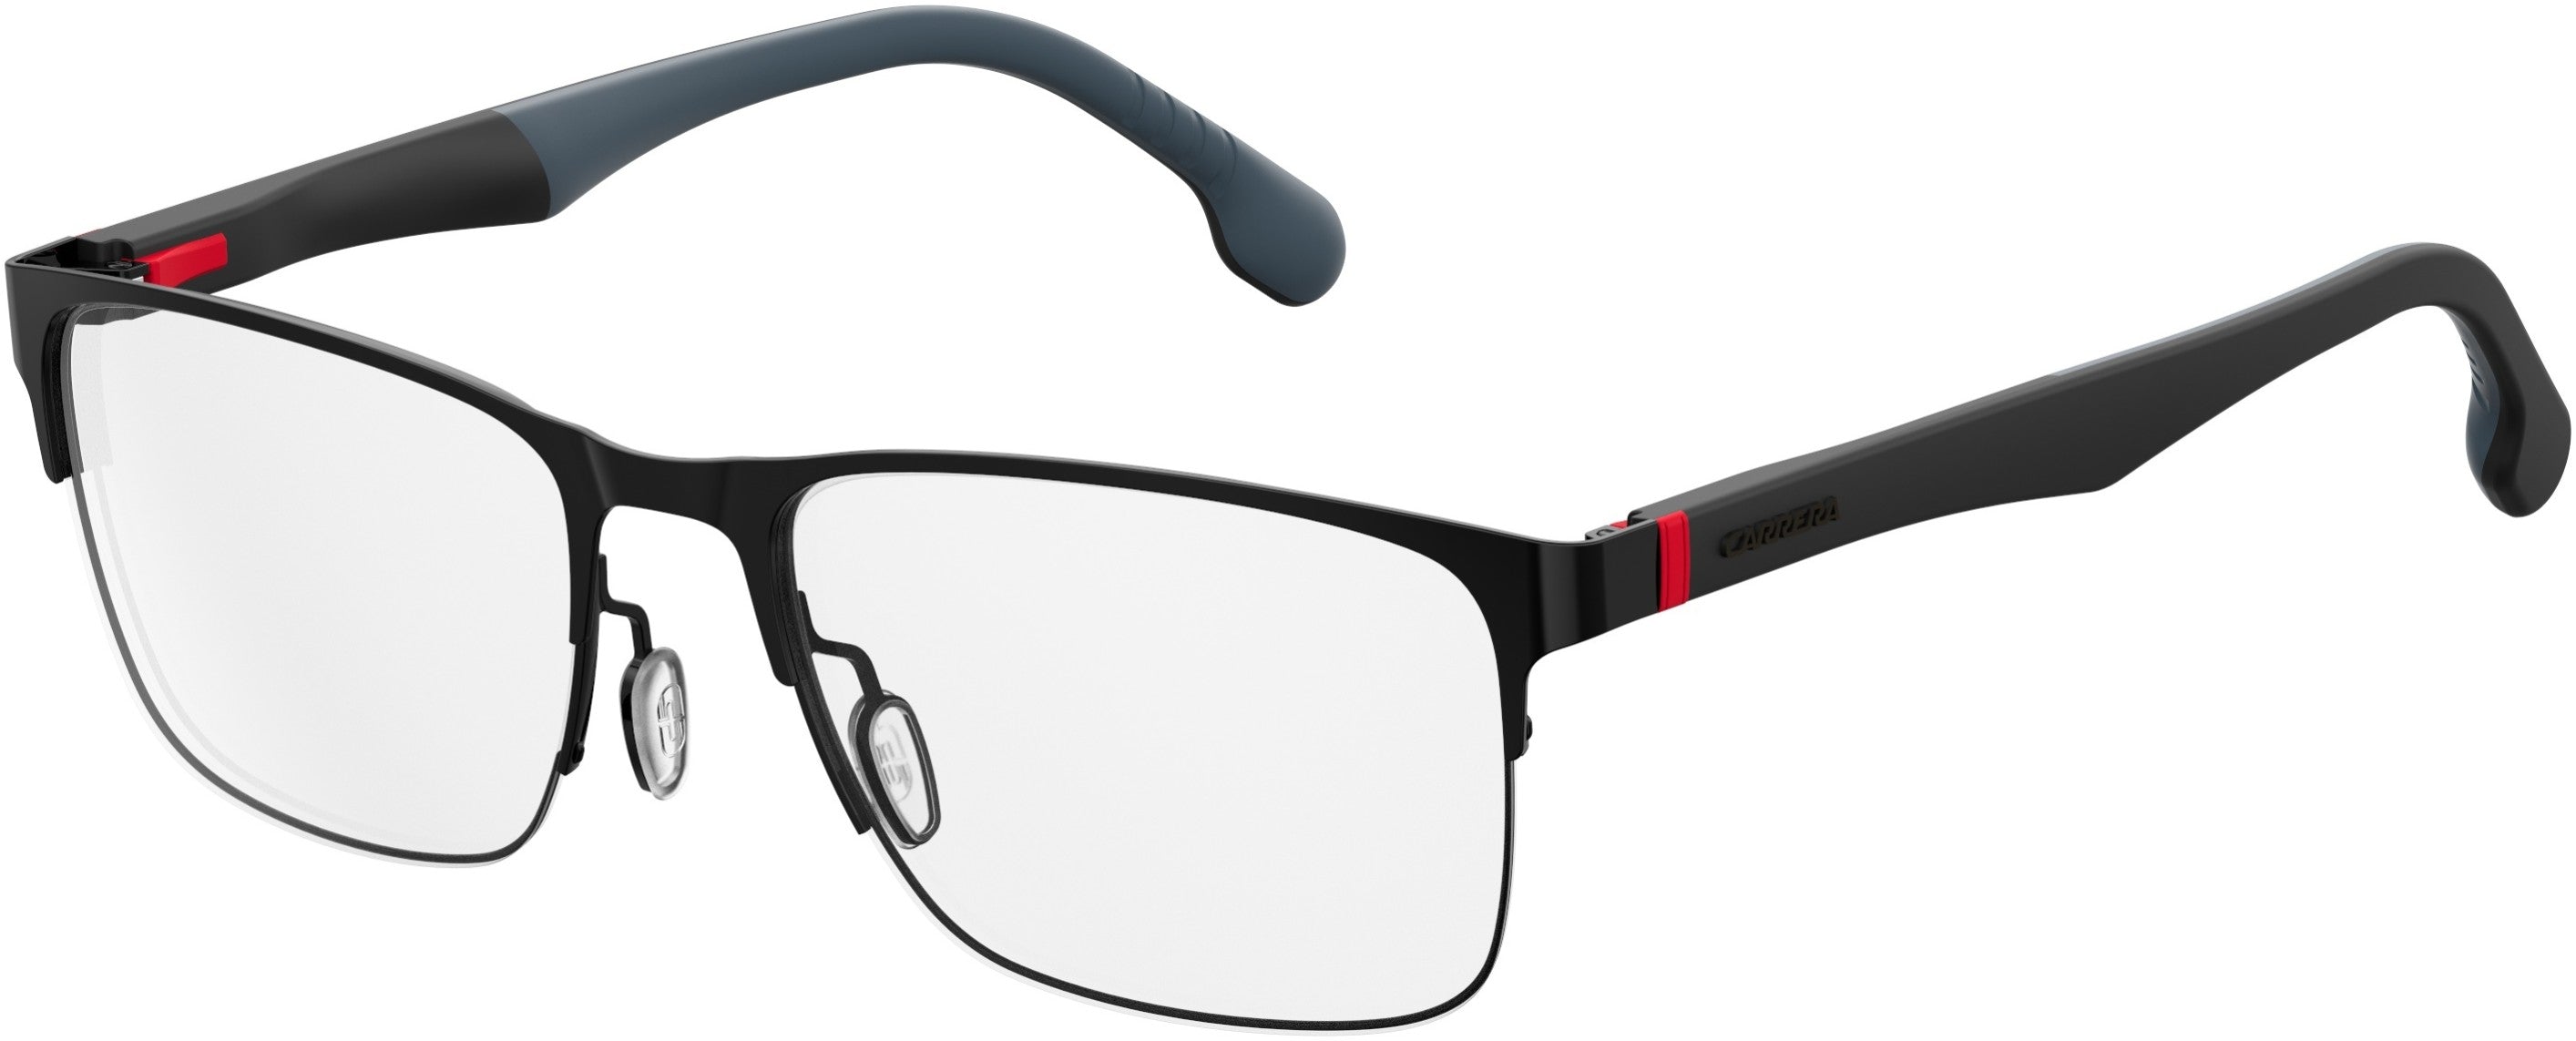  Carrera 8830/V Rectangular Eyeglasses 0807-0807  Black (00 Demo Lens)